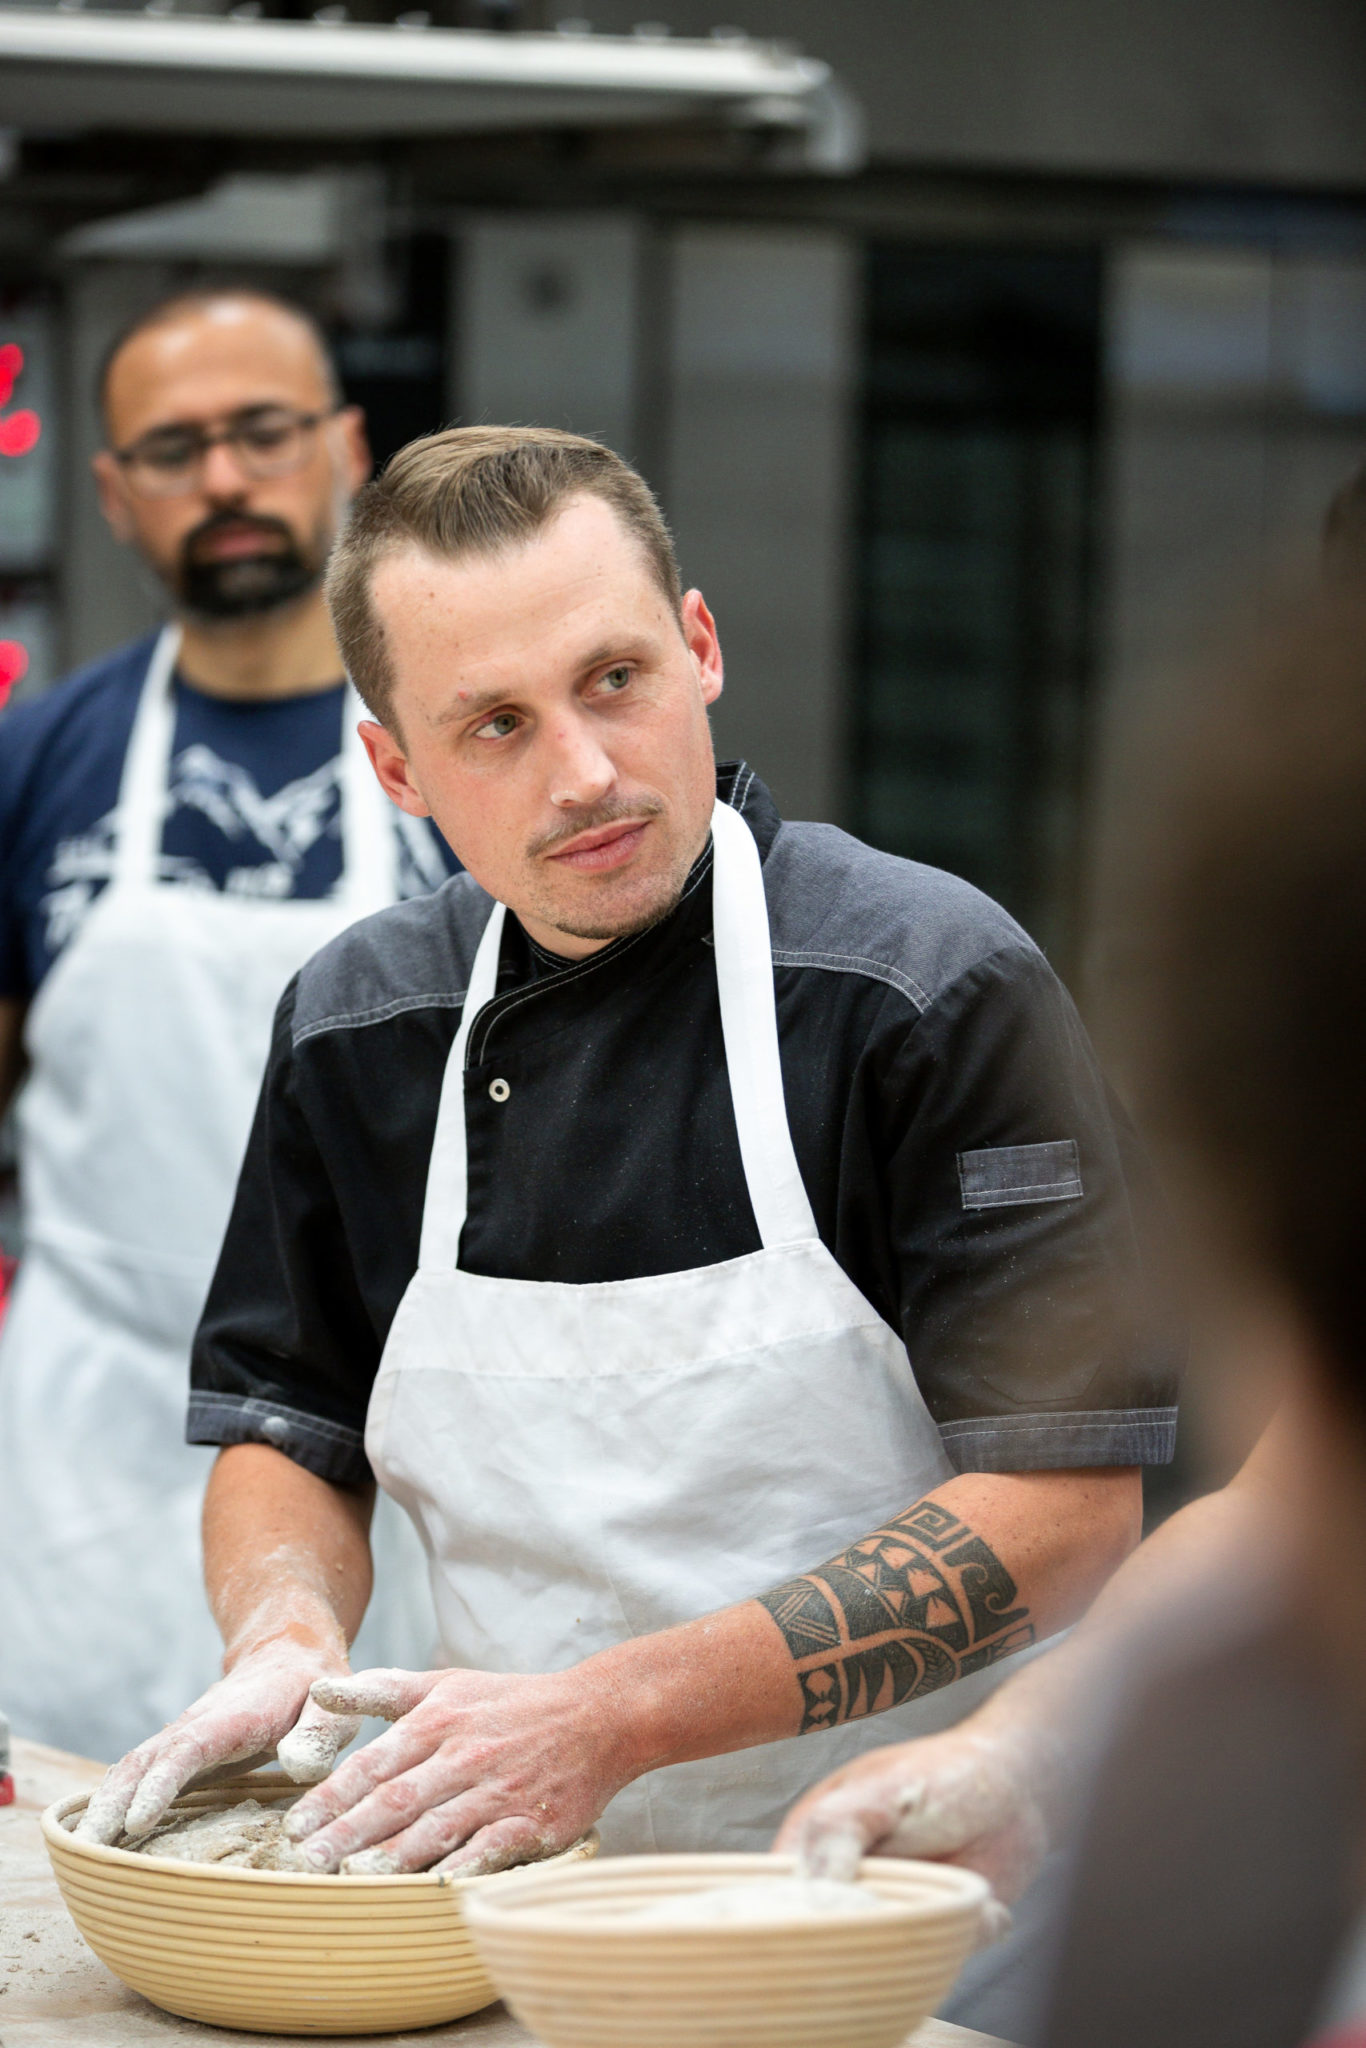 Instructor Pablo Puluke Giet teaching baking at the Artisan Baking Center